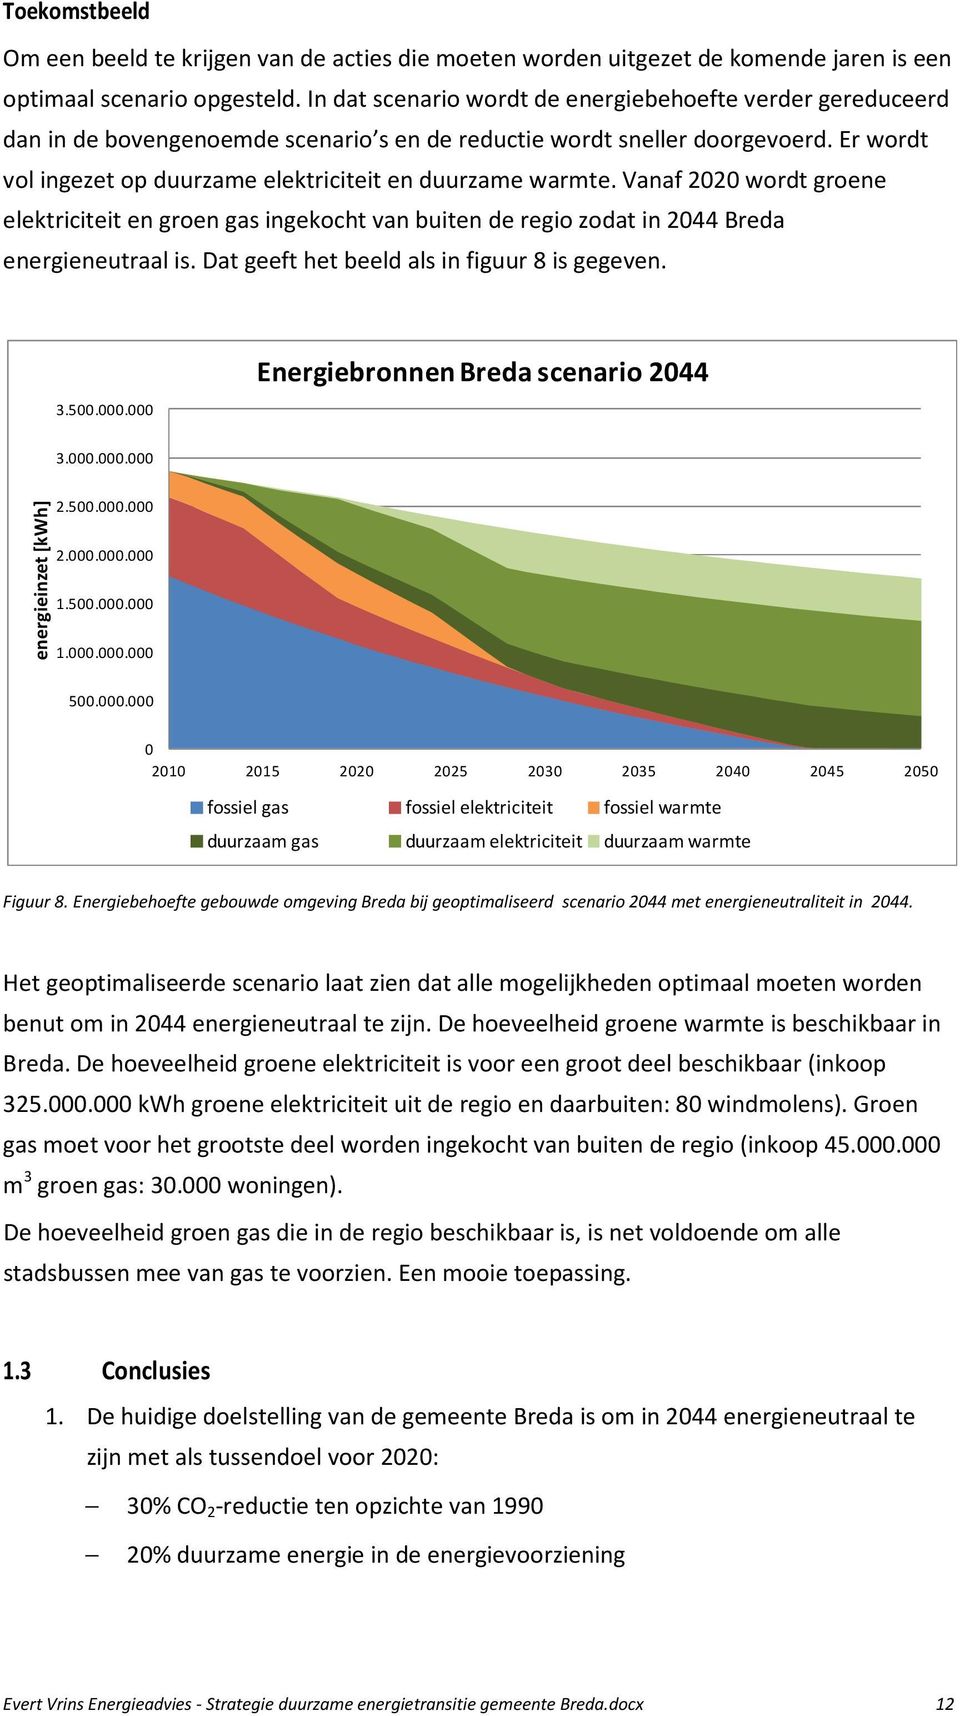 Er wordt vol ingezet op duurzame elektriciteit en duurzame warmte. Vanaf 2020 wordt groene elektriciteit en groen gas ingekocht van buiten de regio zodat in 2044 Breda energieneutraal is.